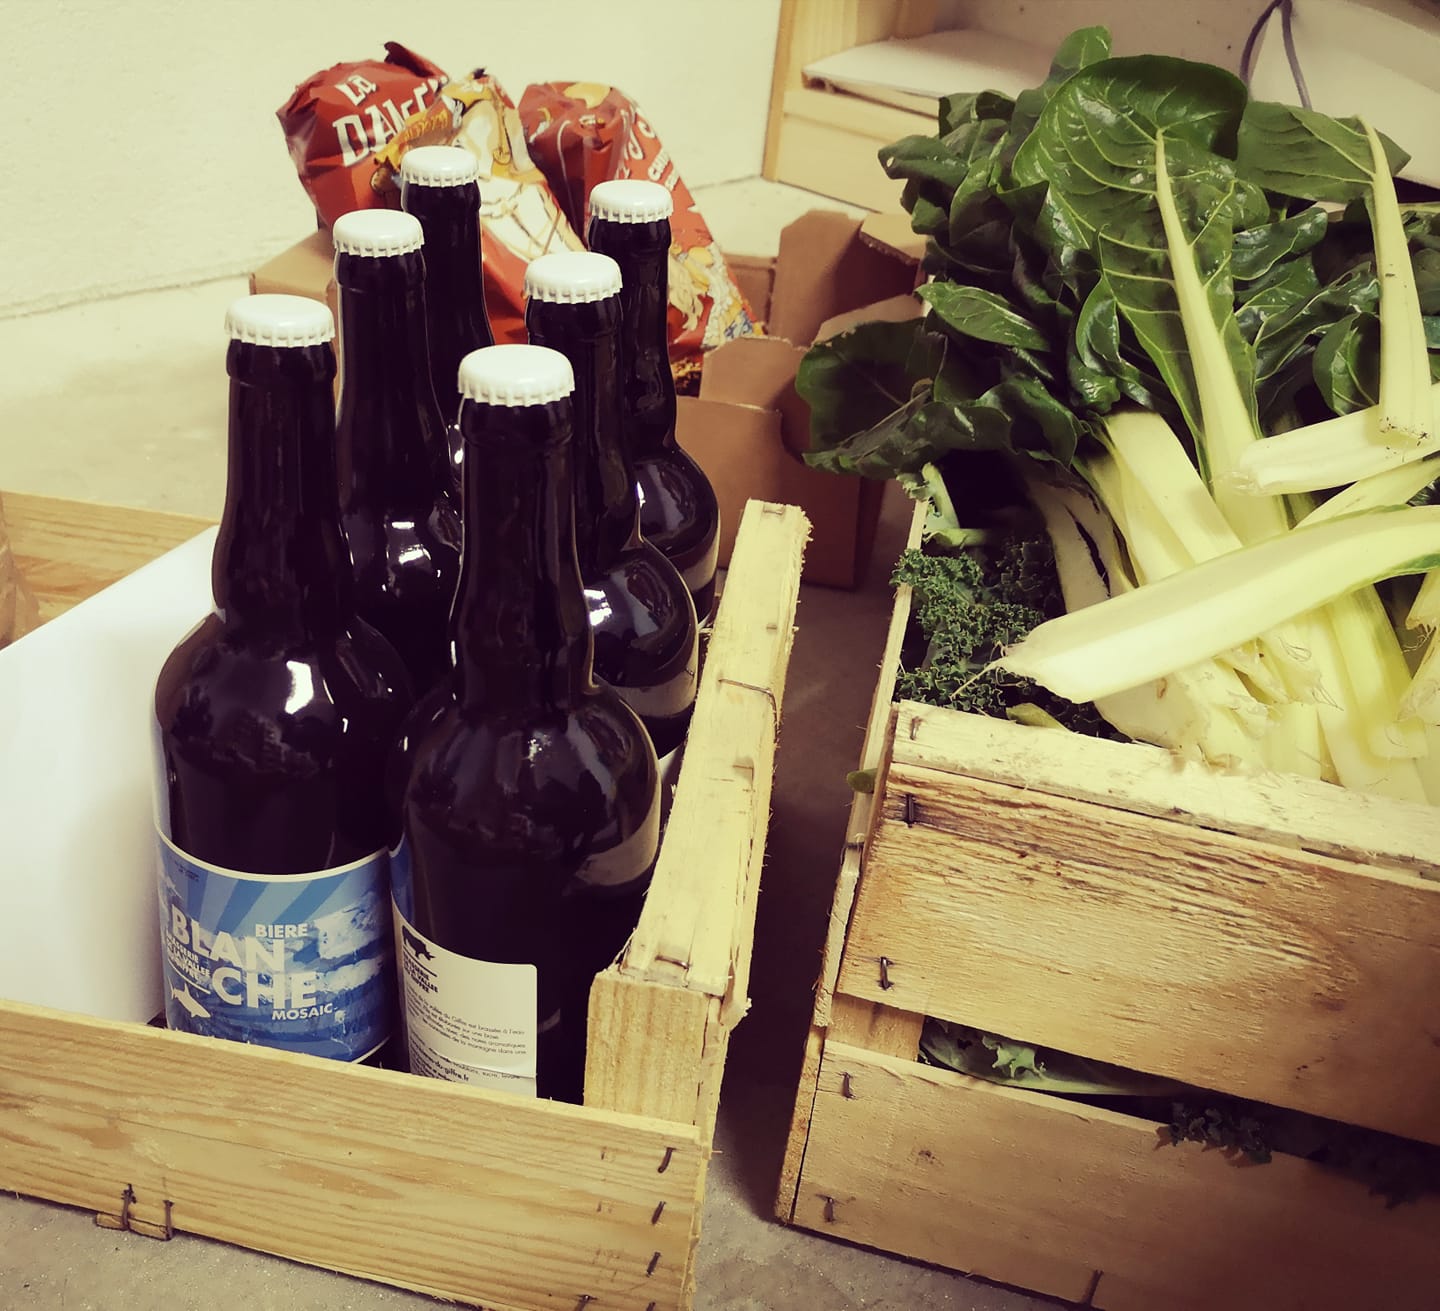 Cagettes de légumes et de bière